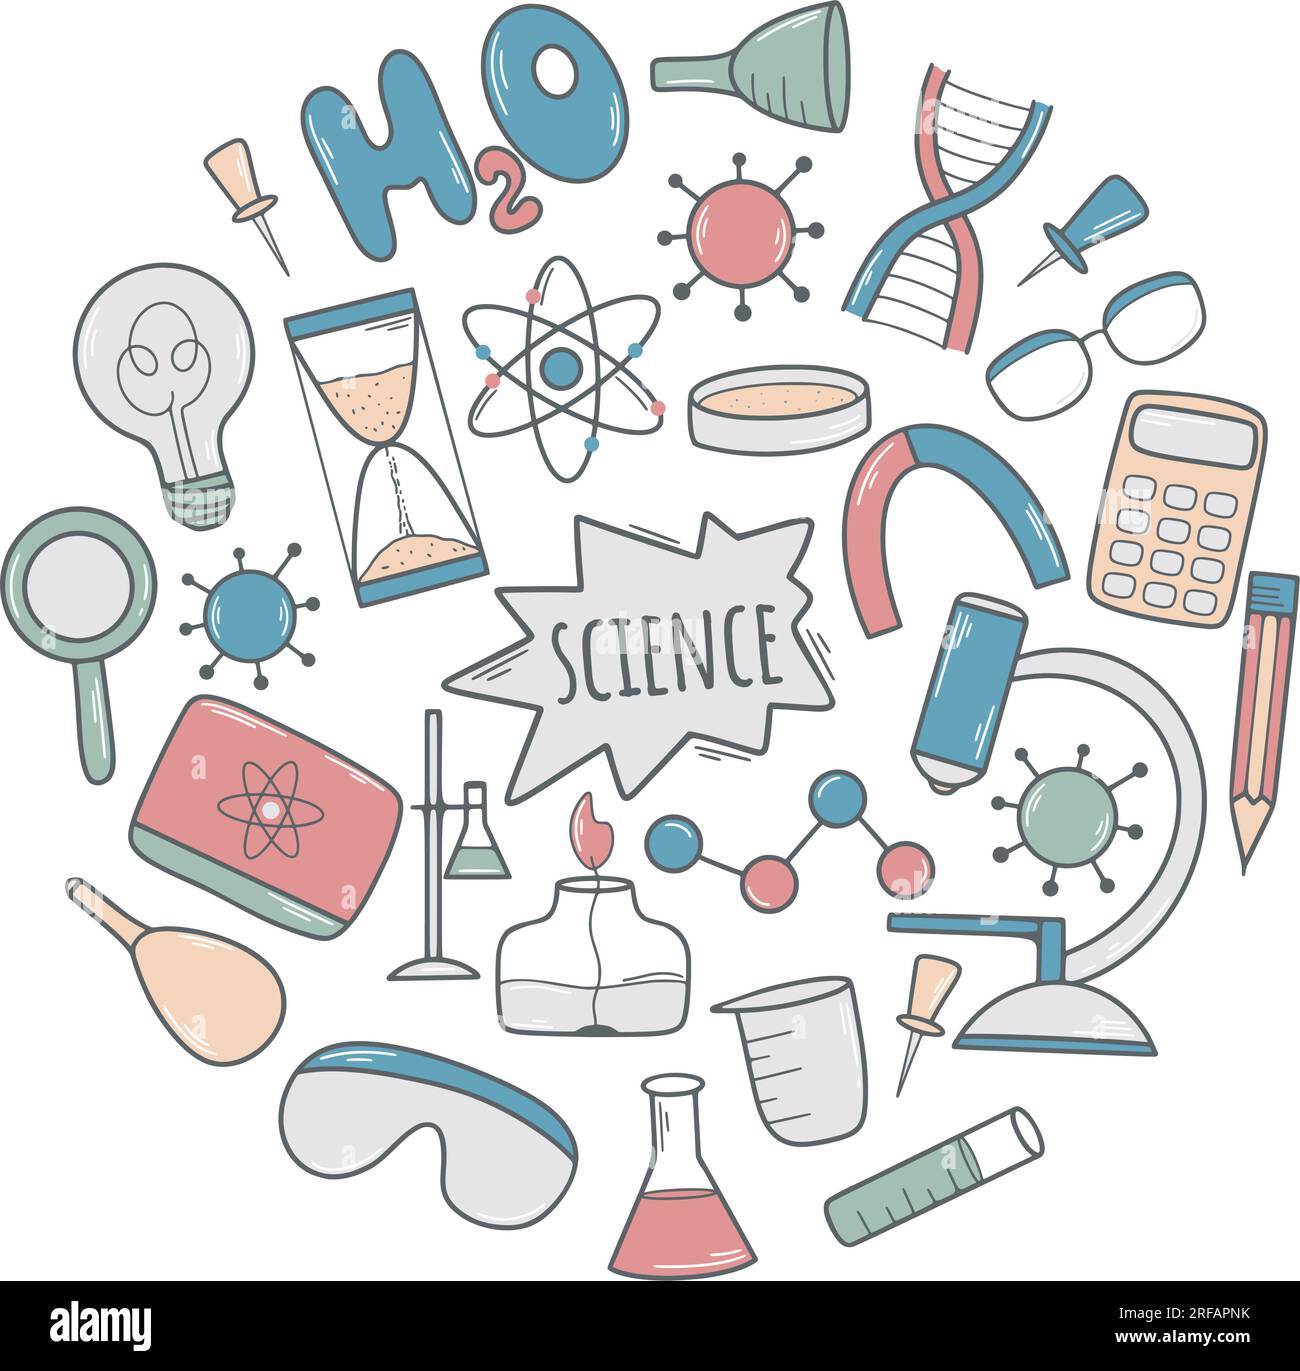 Handgezeichnetes Rundbanner für Wissenschaft. Chemie, Biologen und Physik. Doodle Broschüre wissenschaftliche Forschung, Experimente und Studien, Vektor Stock Vektor